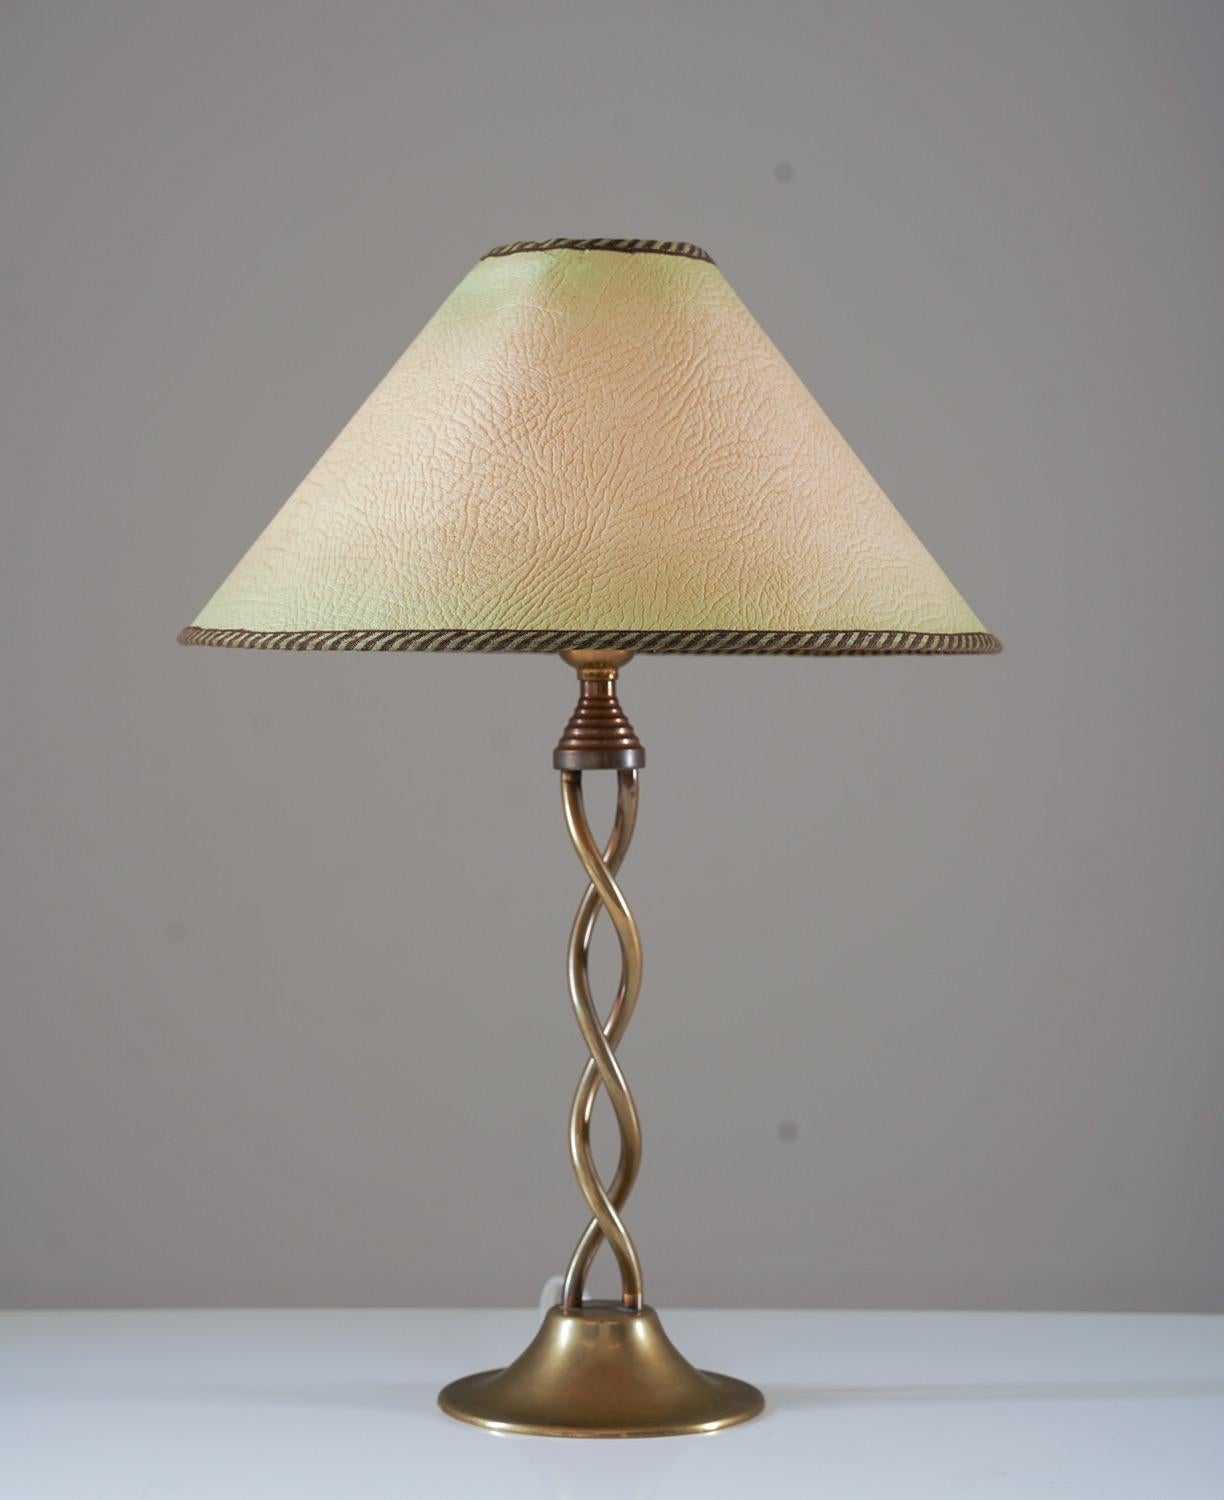 Lampe de table moderne suédoise en laiton, probablement produite en Suède, années 1930.

État : très bon état. Les lampes sont accompagnées d'un abat-jour vintage assorti de la même époque.